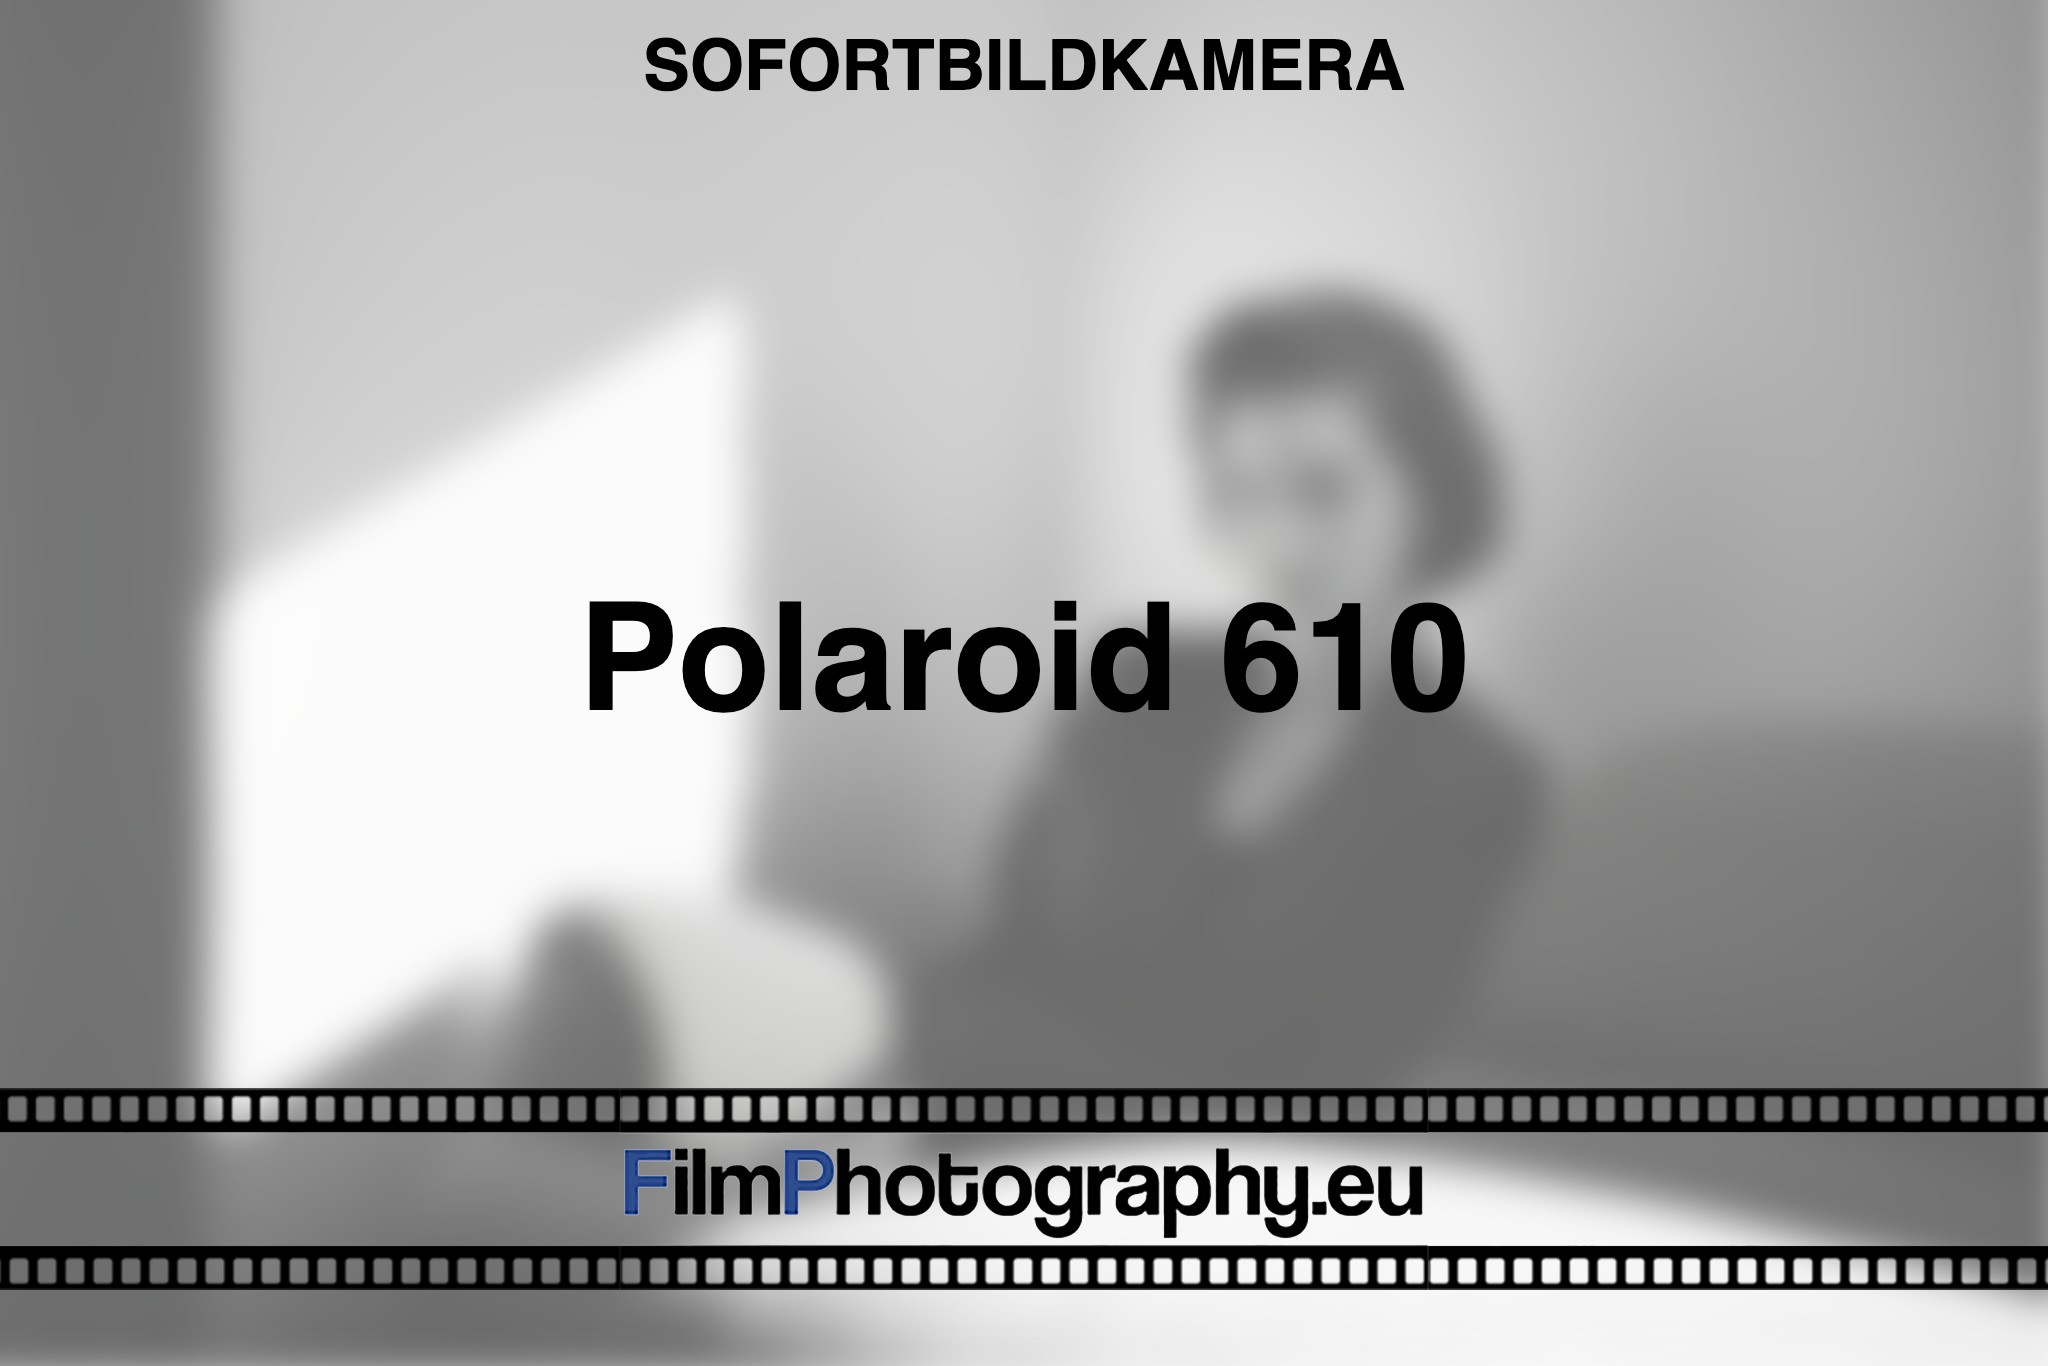 polaroid-610-sofortbildkamera-bnv